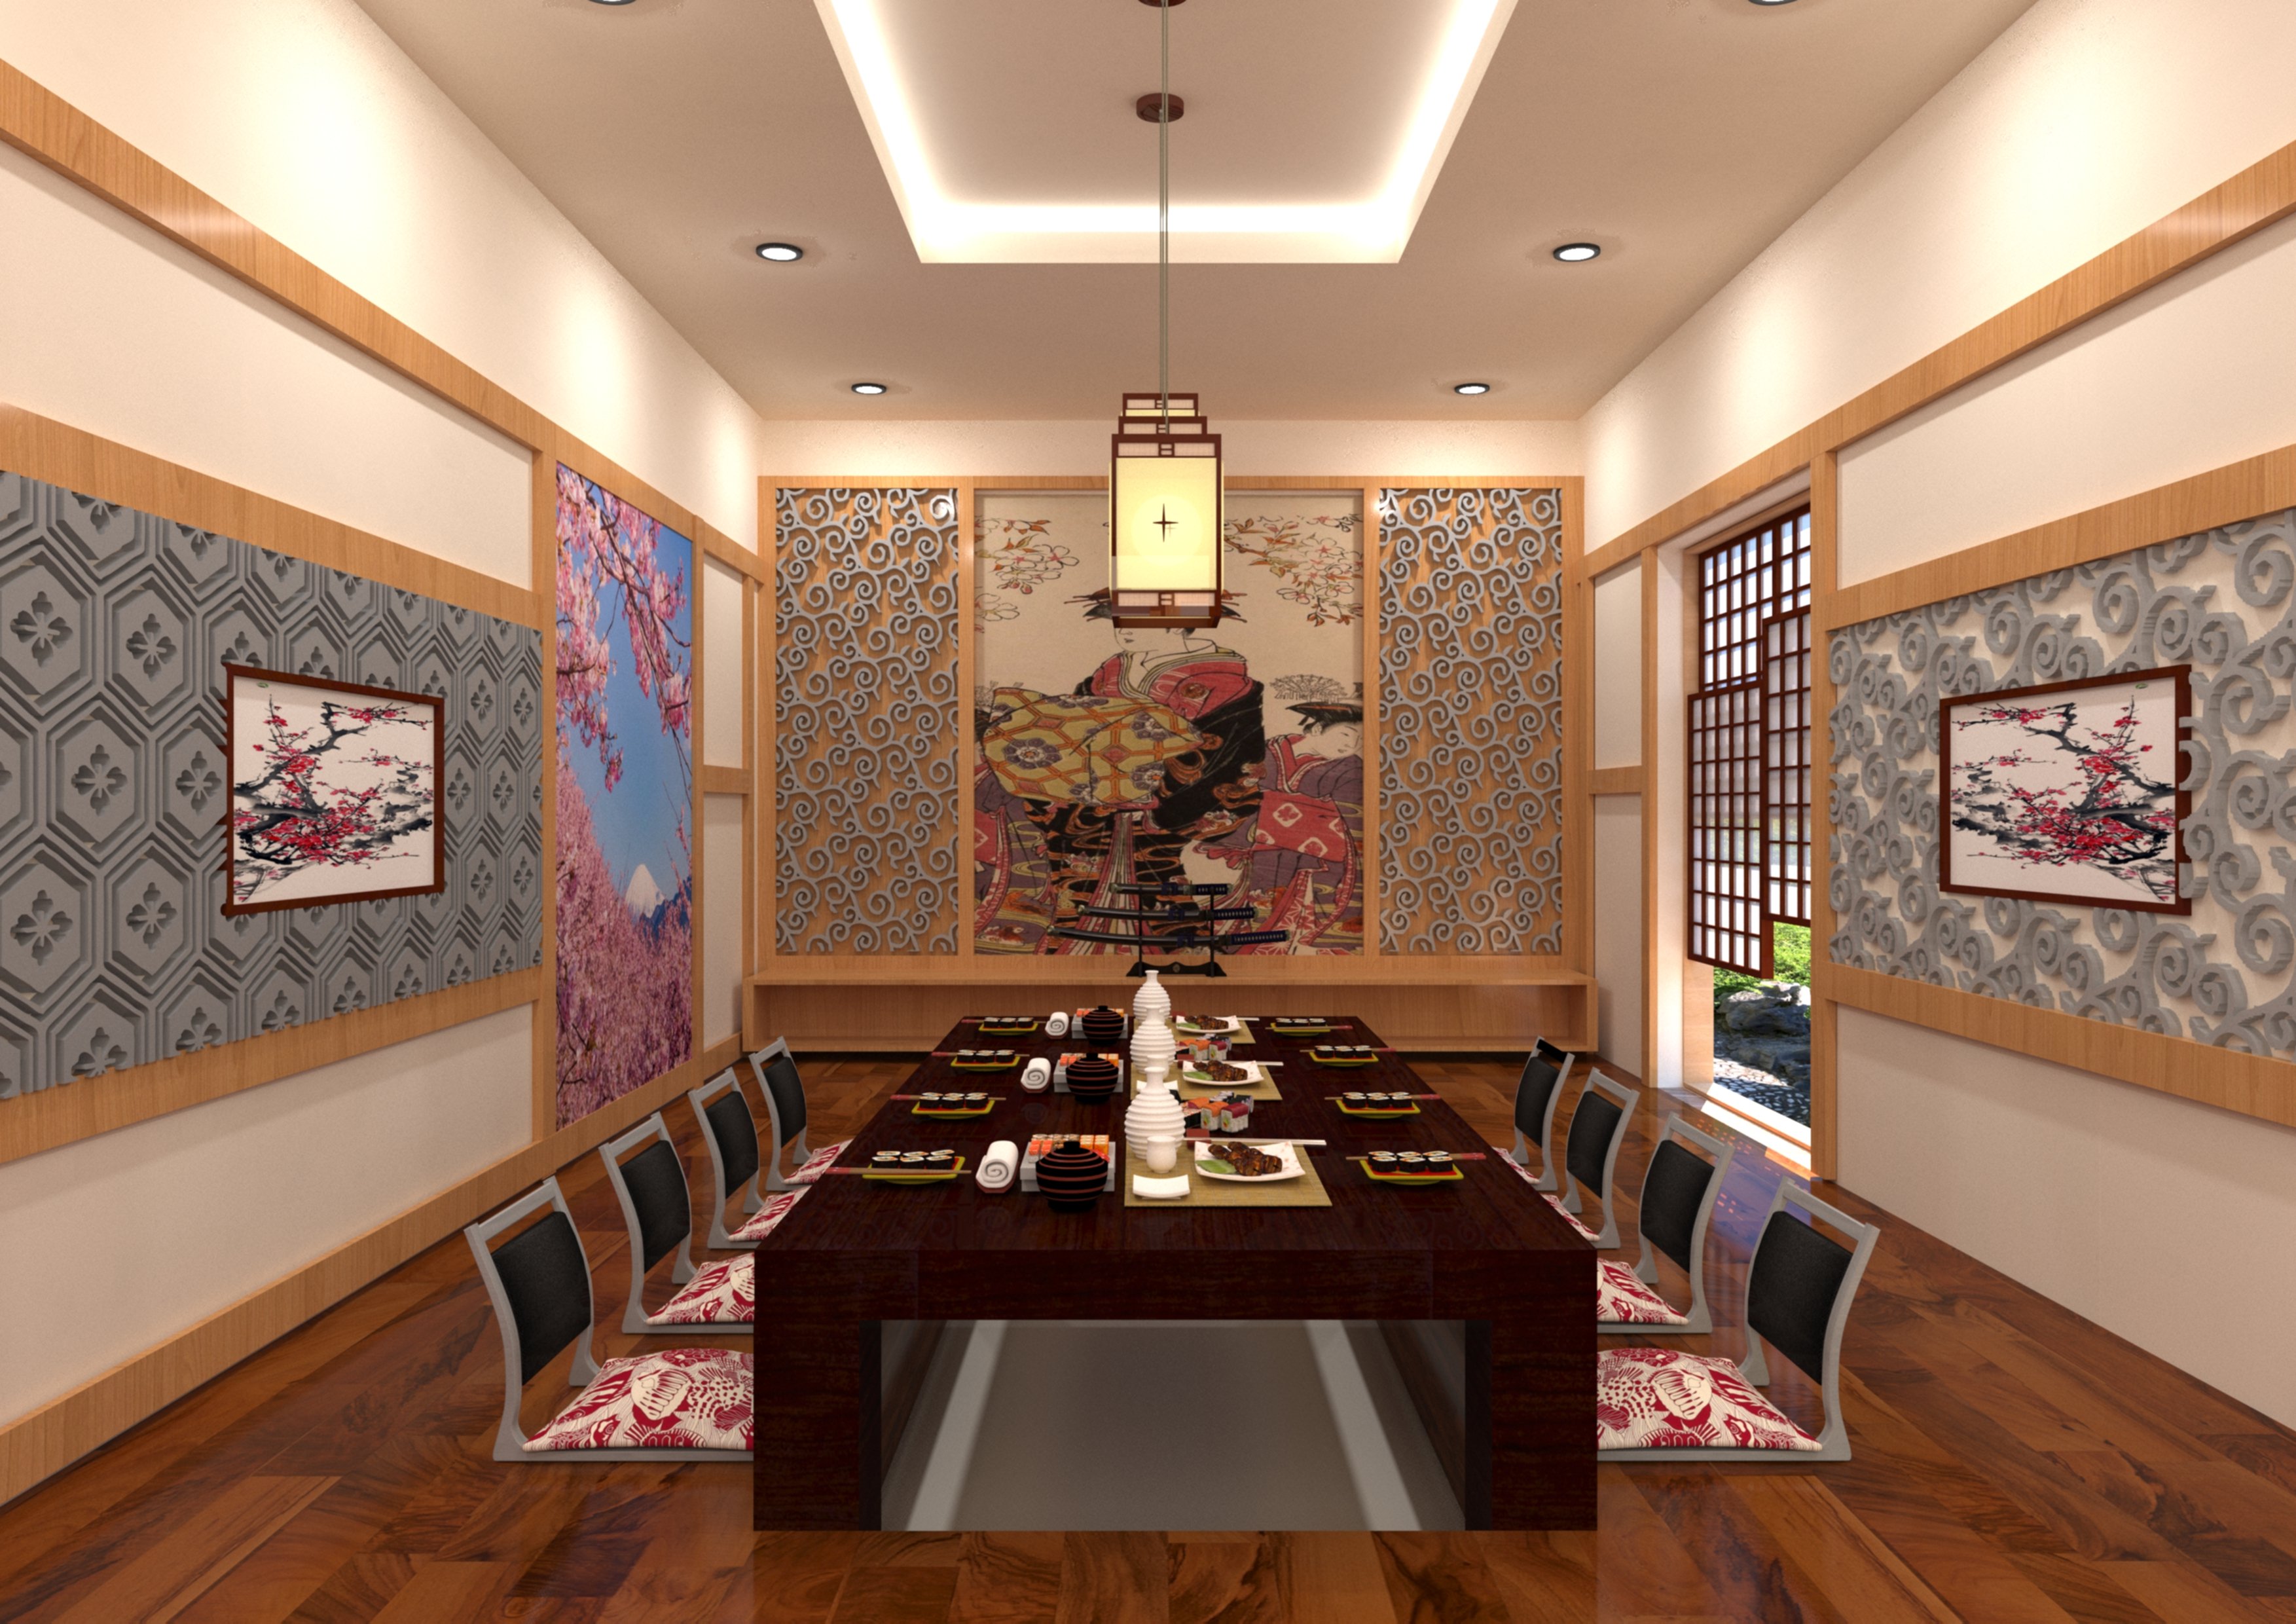 Thiết kế nội thất Nhà Hàng tại Hồ Chí Minh Đồ án thiết kế nhà hàng Nhật Bản 1633334938 5